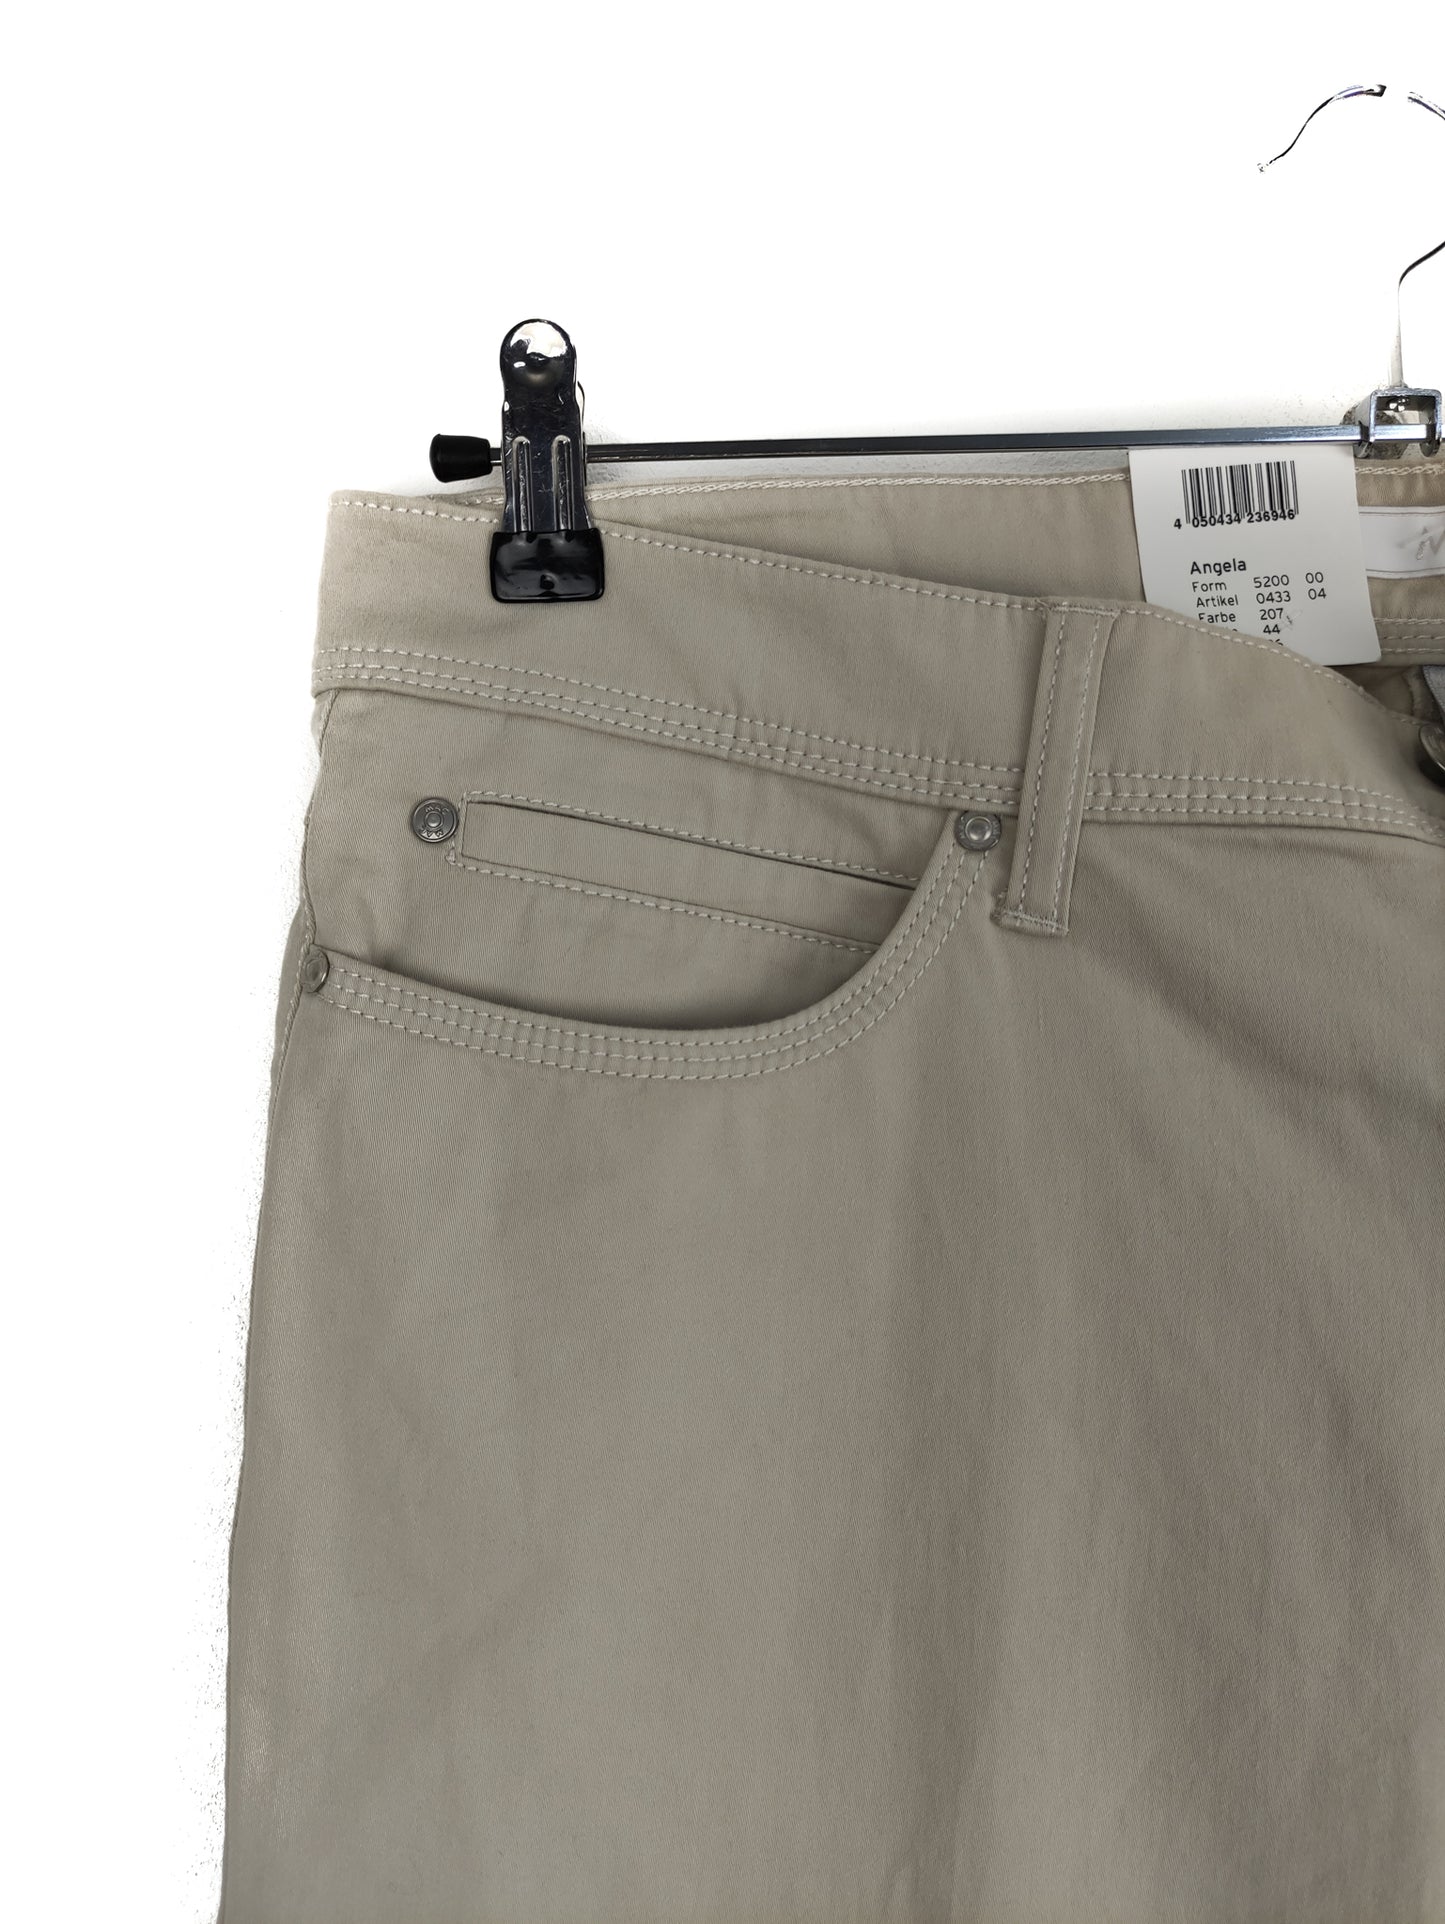 Stock Γυναικείο Παντελόνι Tζιν MAC σε Μπεζ Χρώμα (XL)